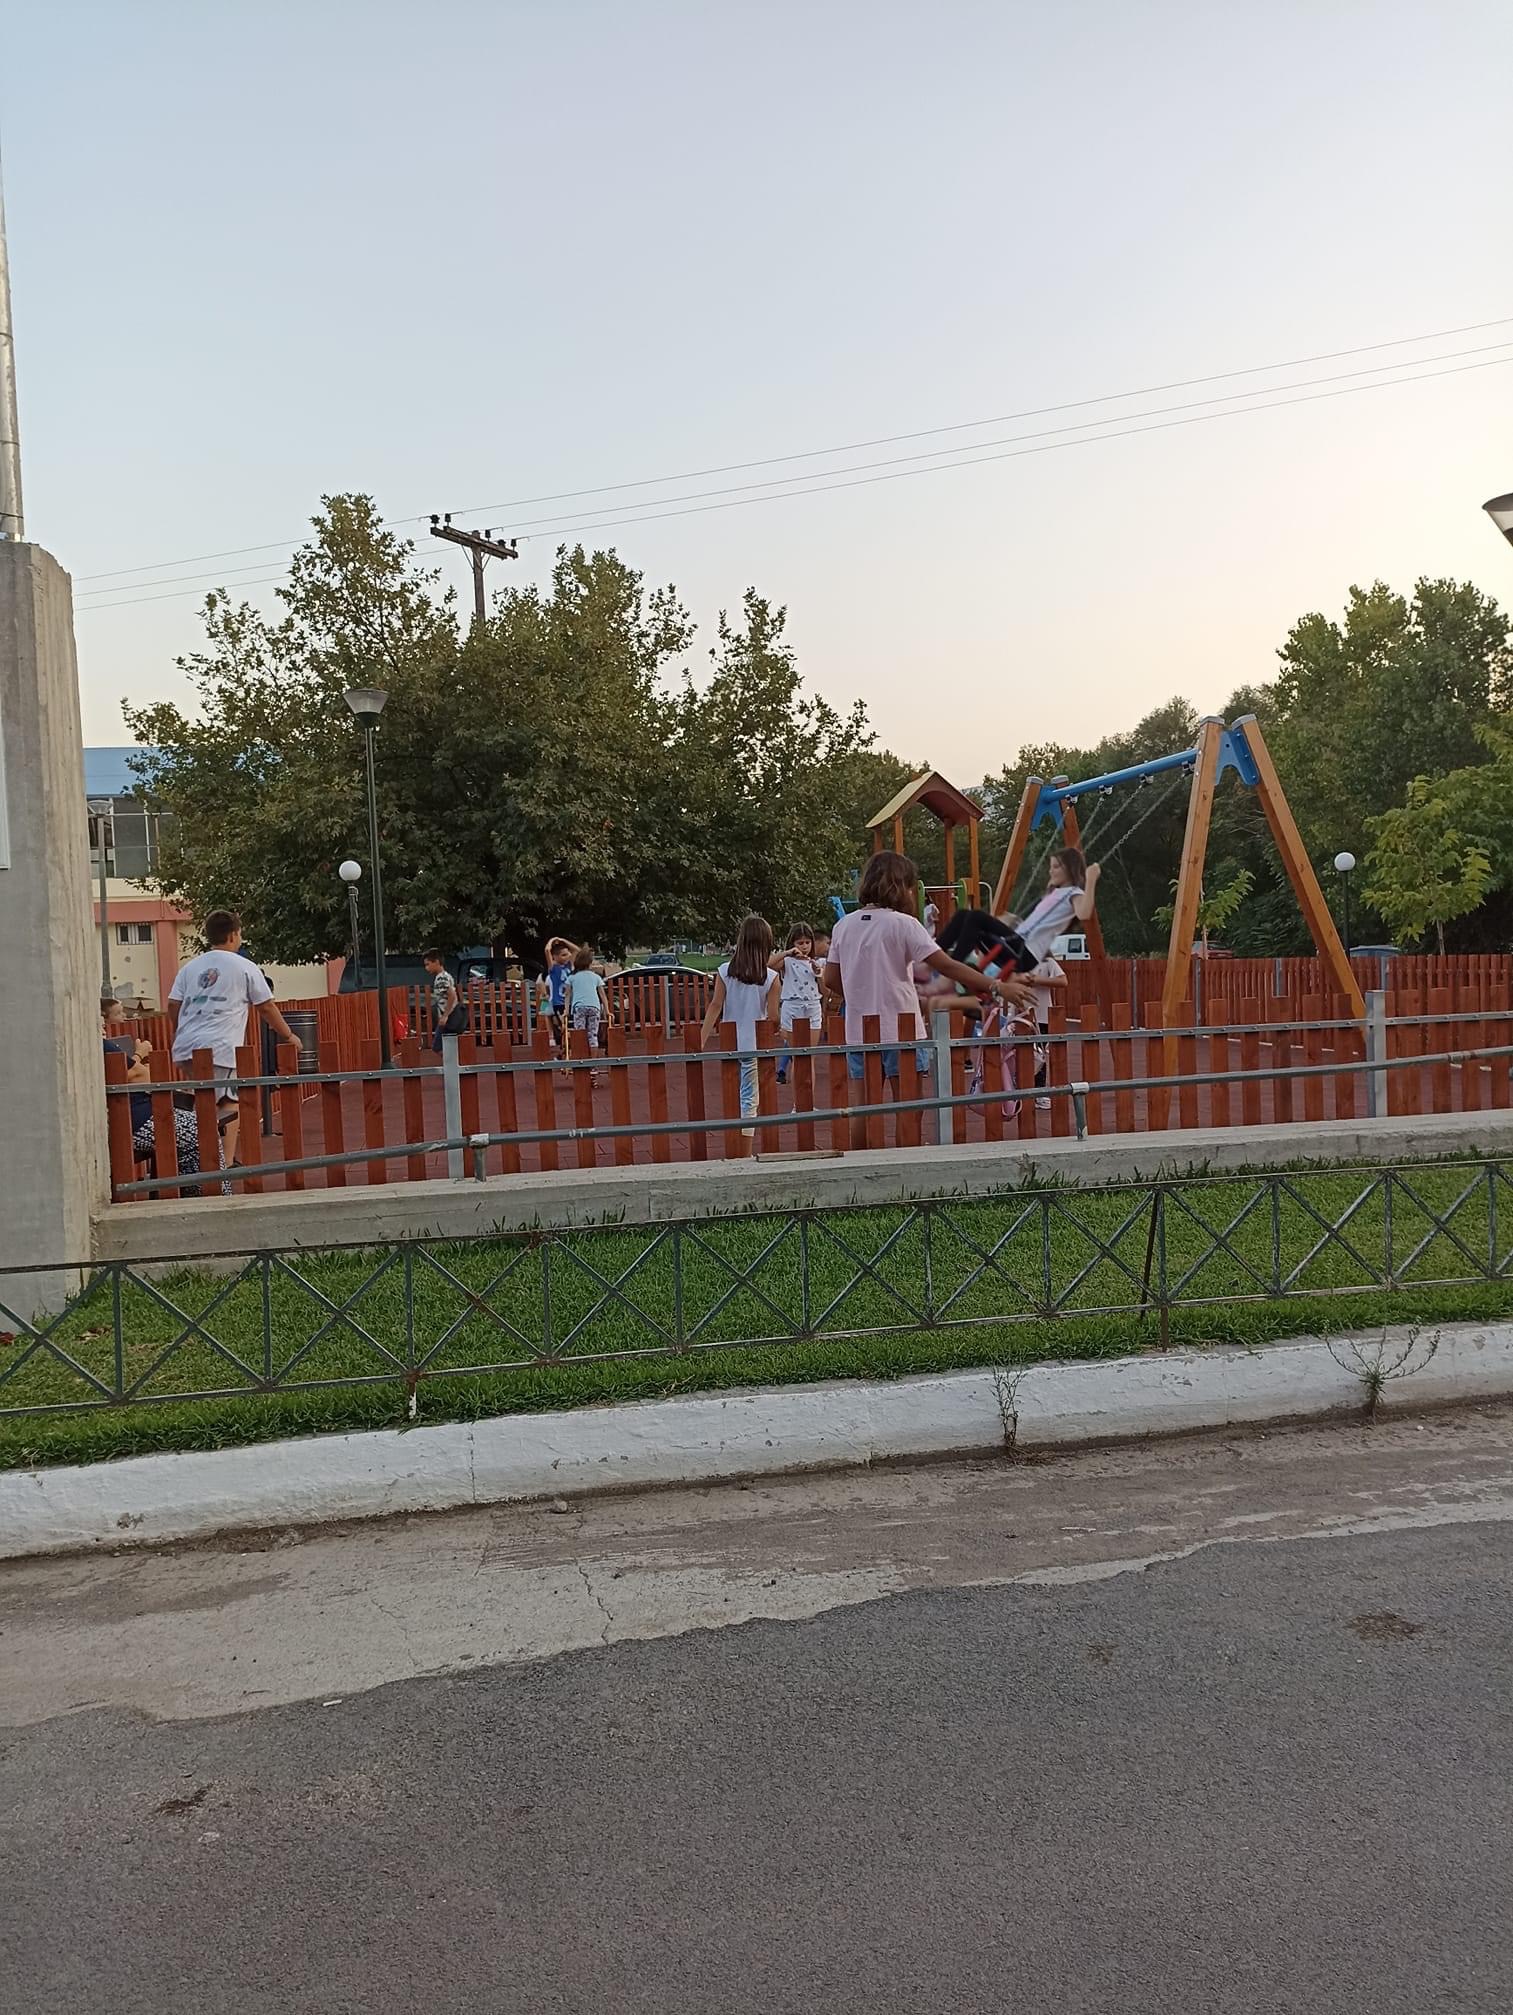 Τσαπουρνιώτης: Κατασκευάζει άλλες έξι παιδικές χαρές στο Δήμο Μαντουδίου Λίμνης Αγίας Άννας